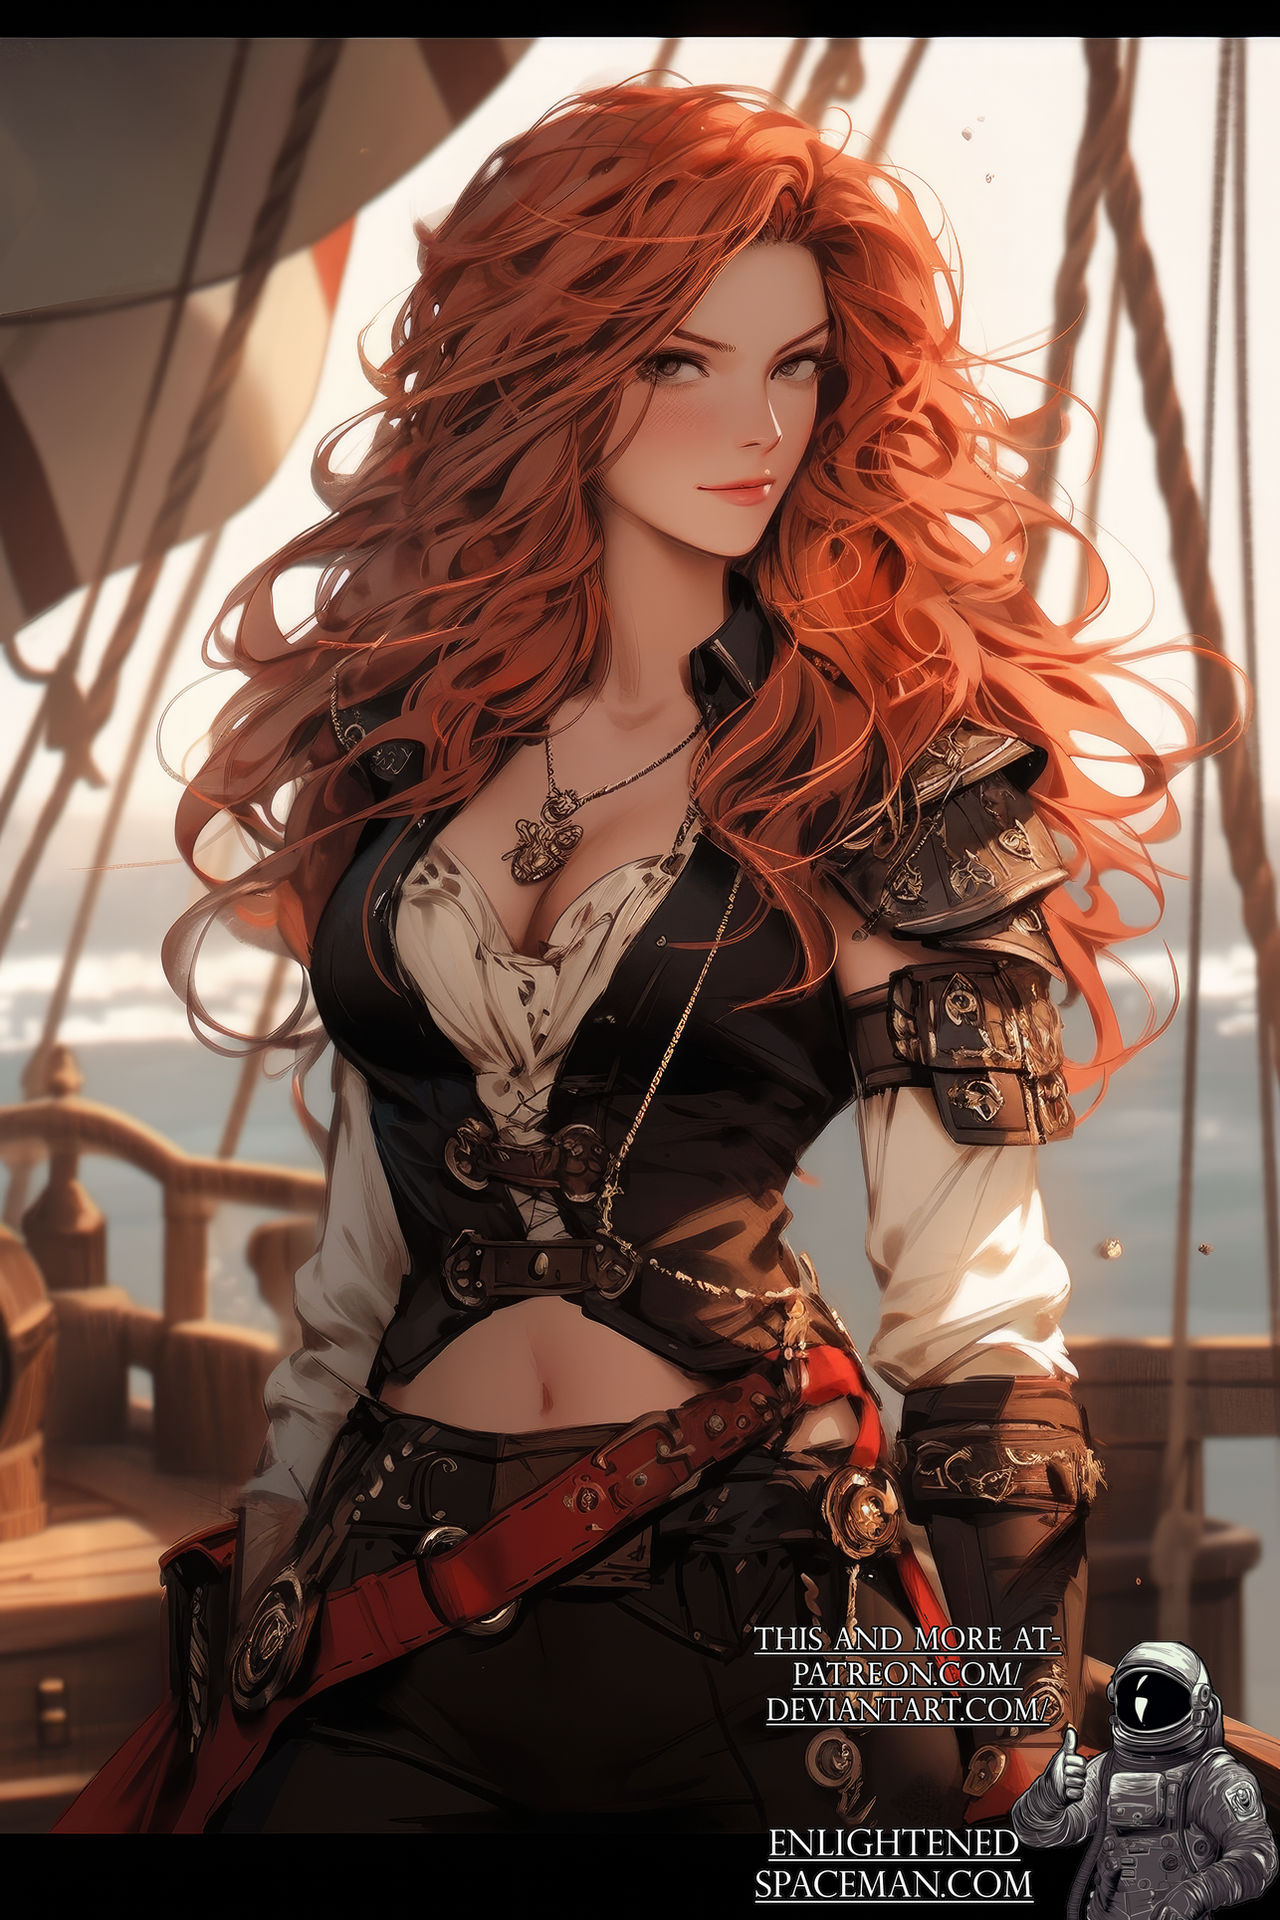 Pirate Queen - 6 by EnlightenedSpaceman on DeviantArt